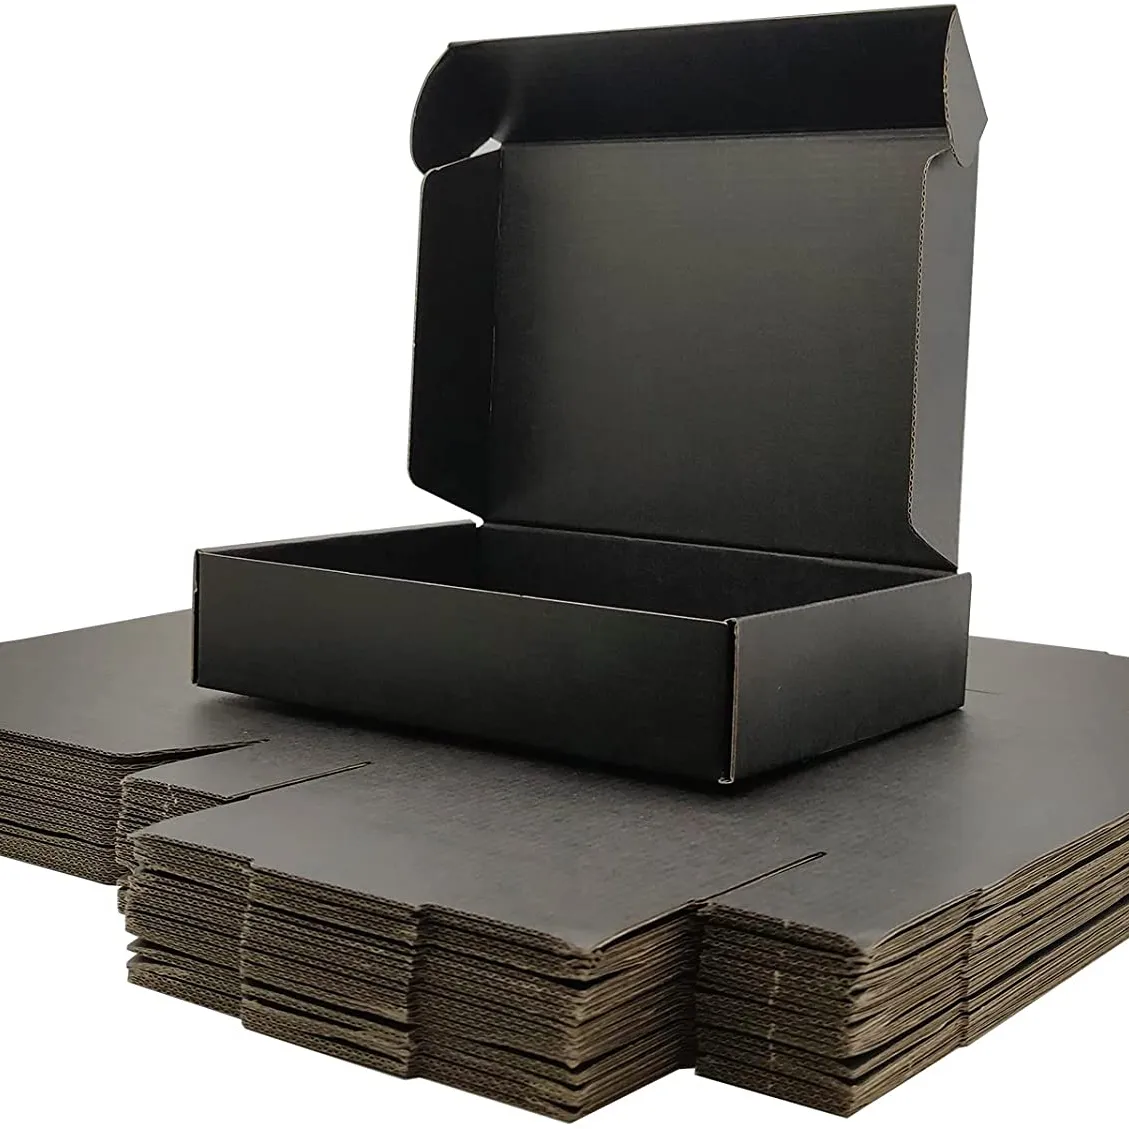 OEM ODM individuell bedruckte Stoffs chuhe Paket Lieferung Karton Box hochwertige Luxus Wellpappe schwarz Versand Mailer Boxen